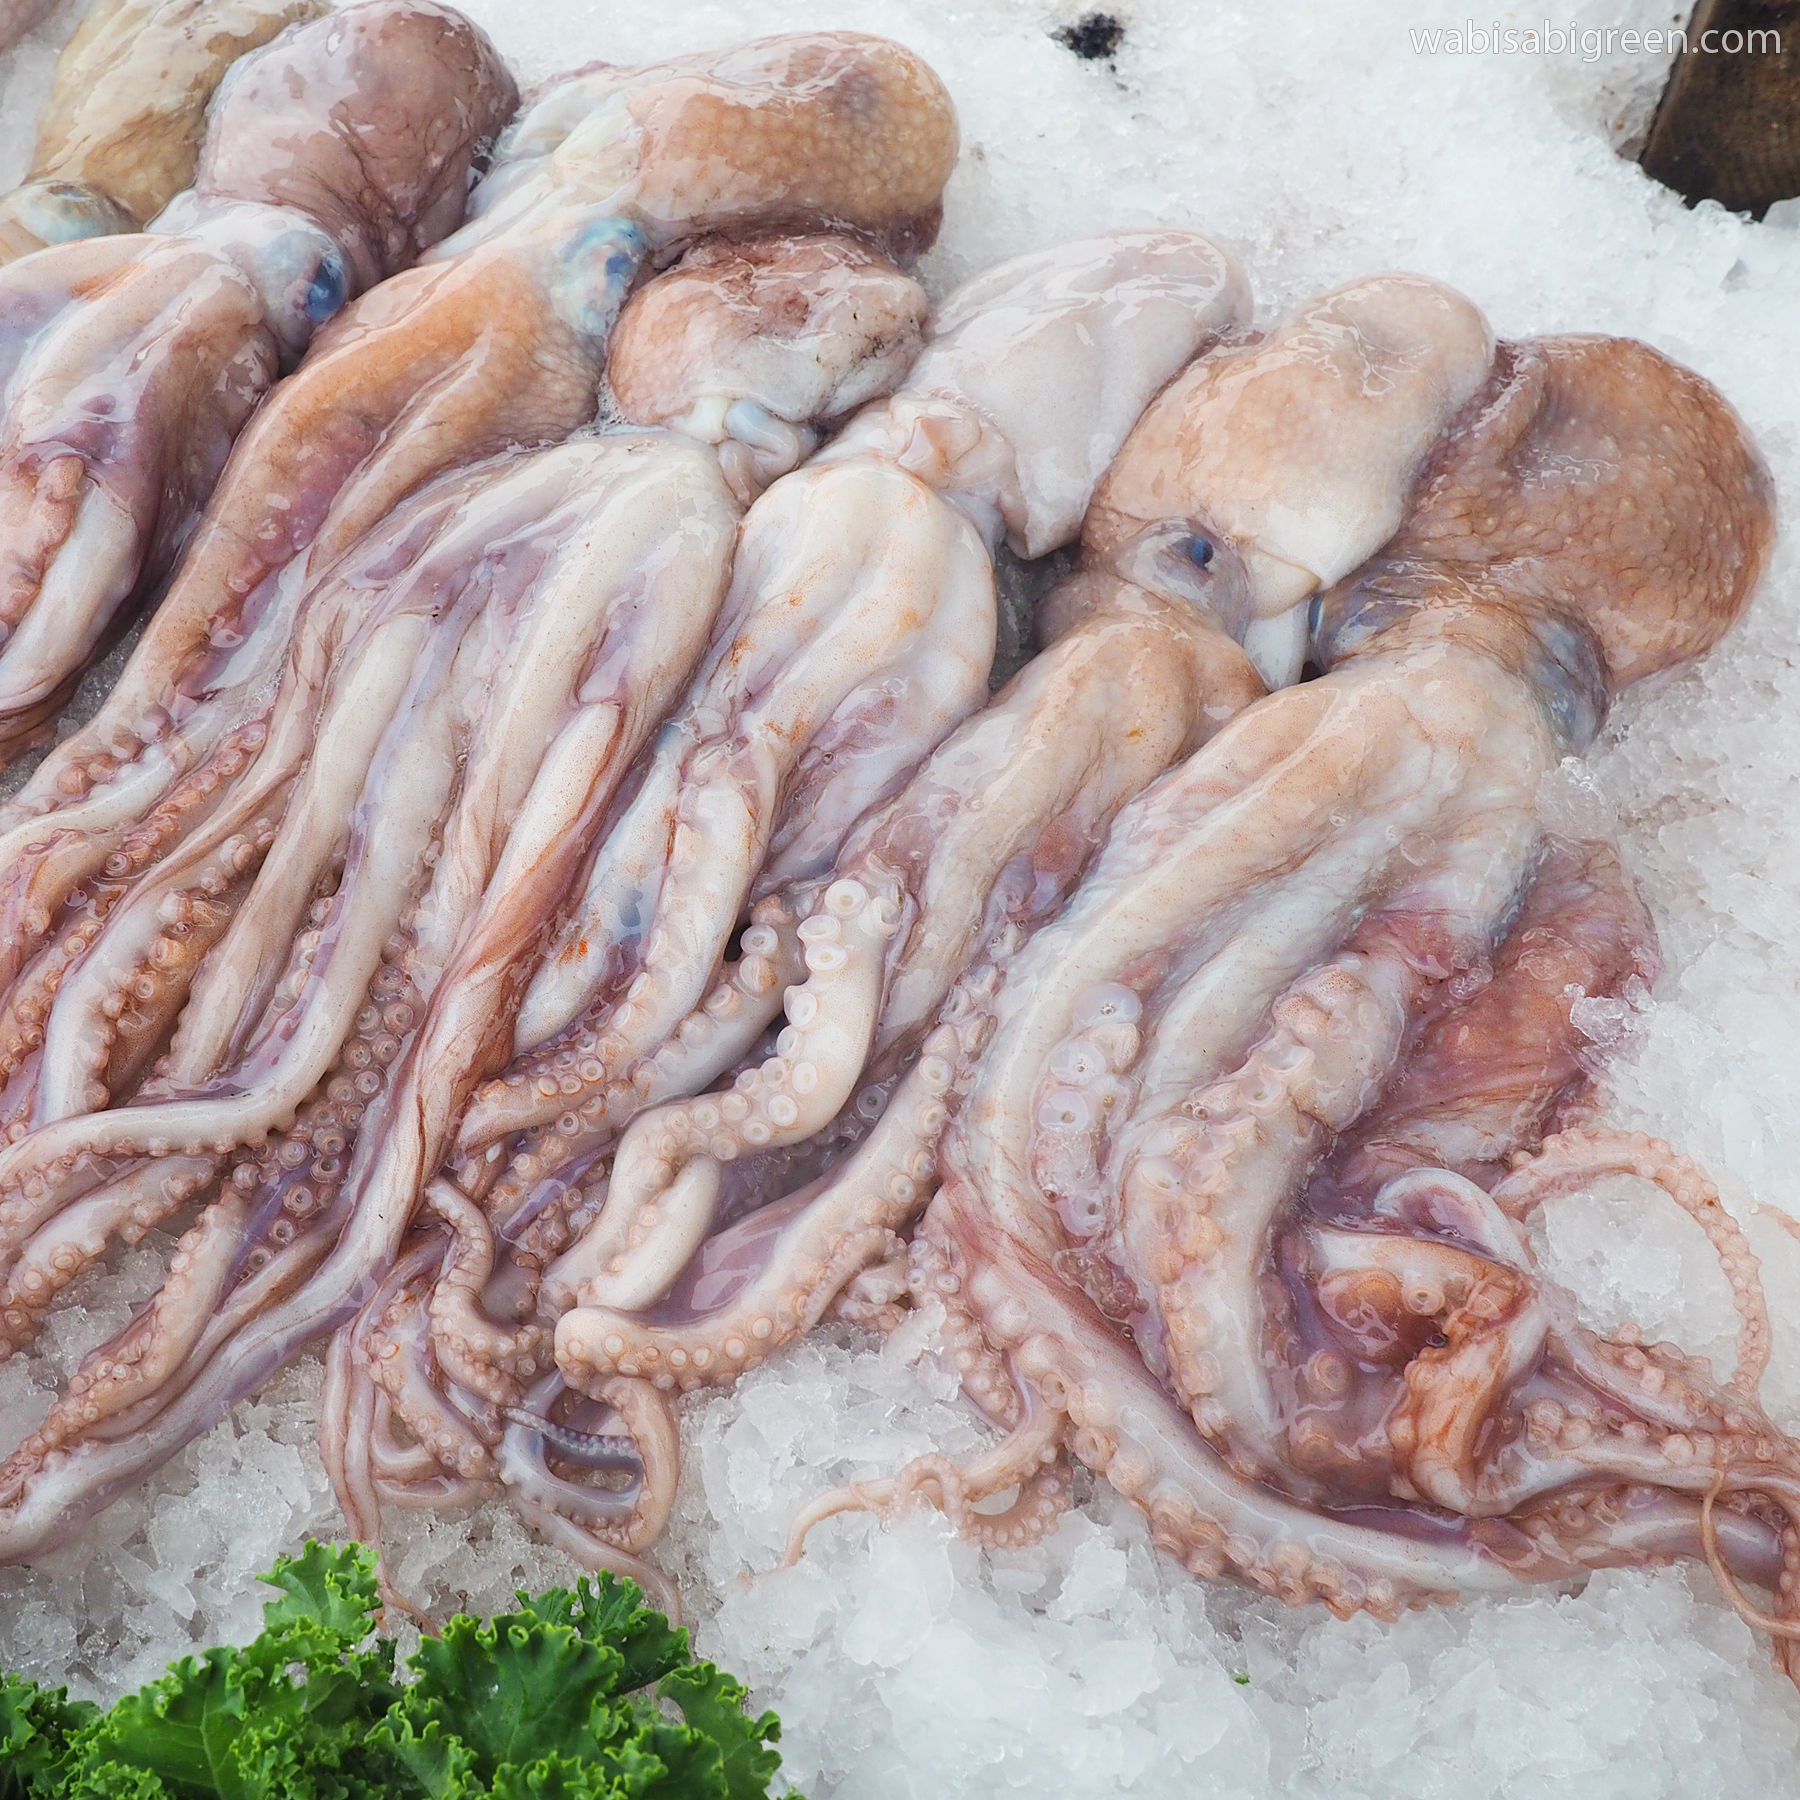 Octopus at Tuna Harbor Dockside Market